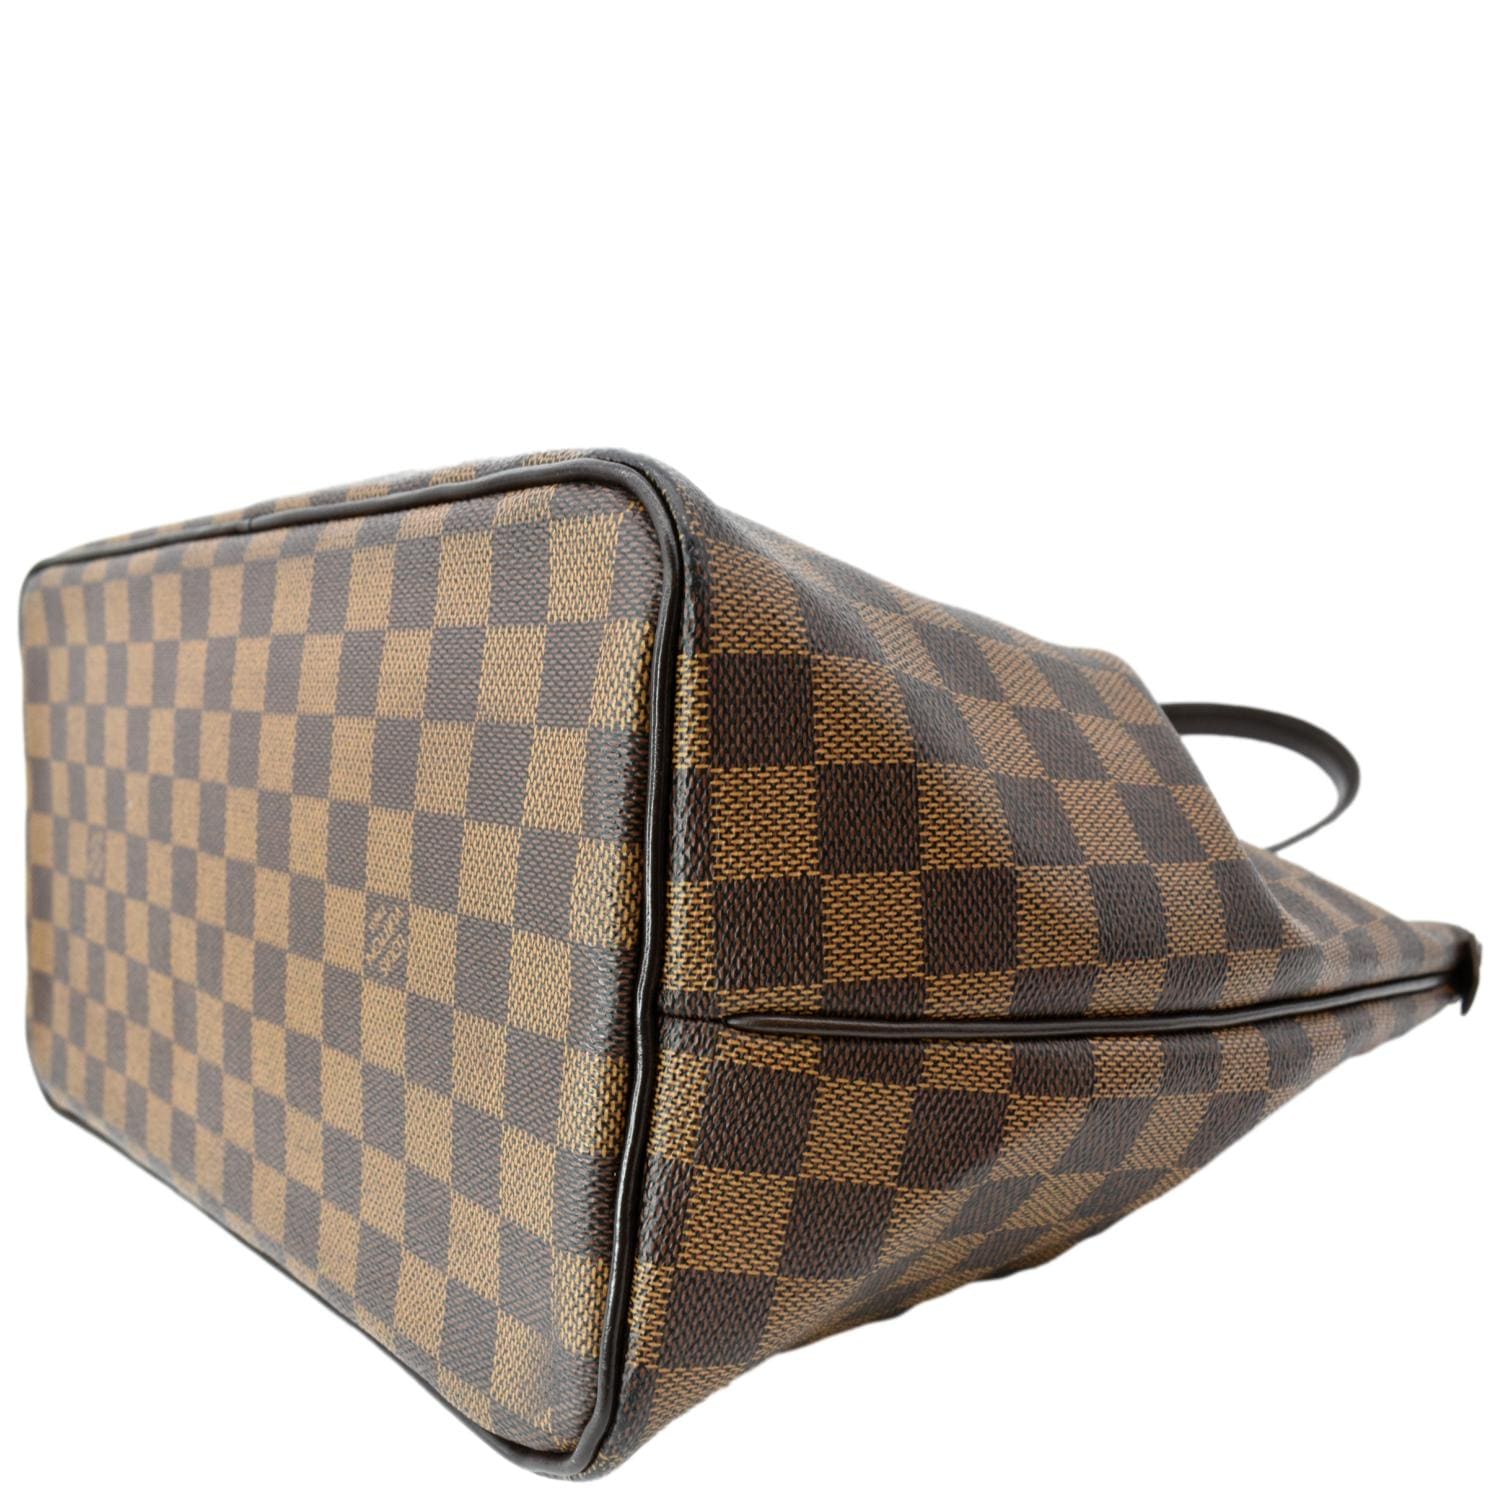 Brown Louis Vuitton Damier Ebene Westminster GM Shoulder Bag